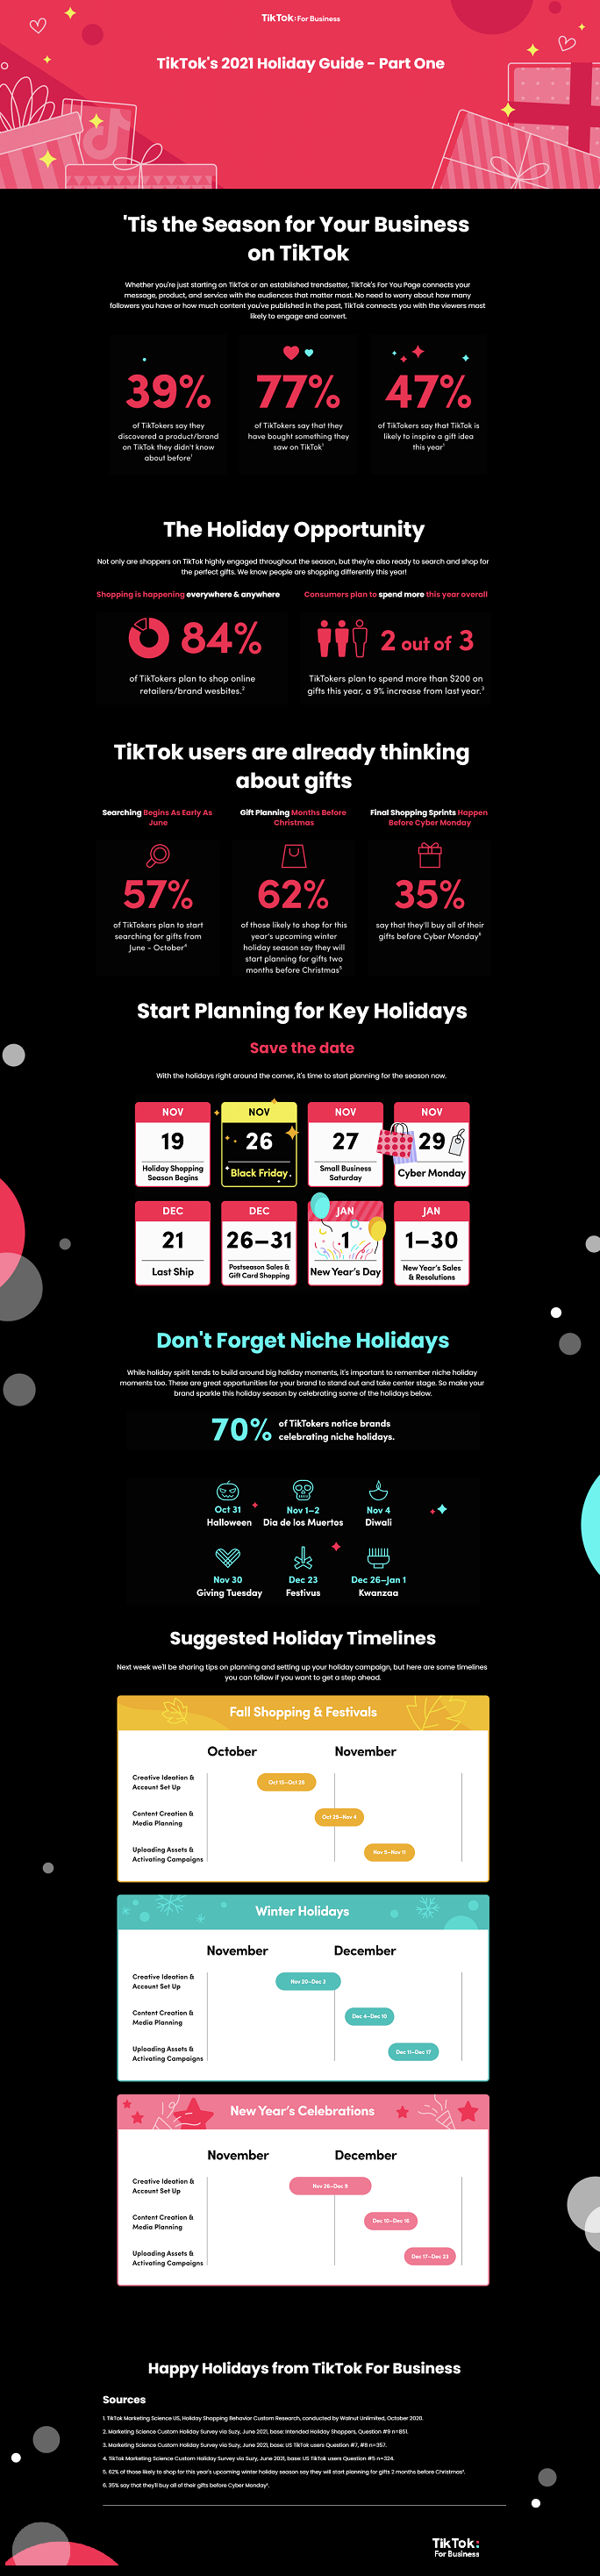 Guide de planification des vacances TikTok